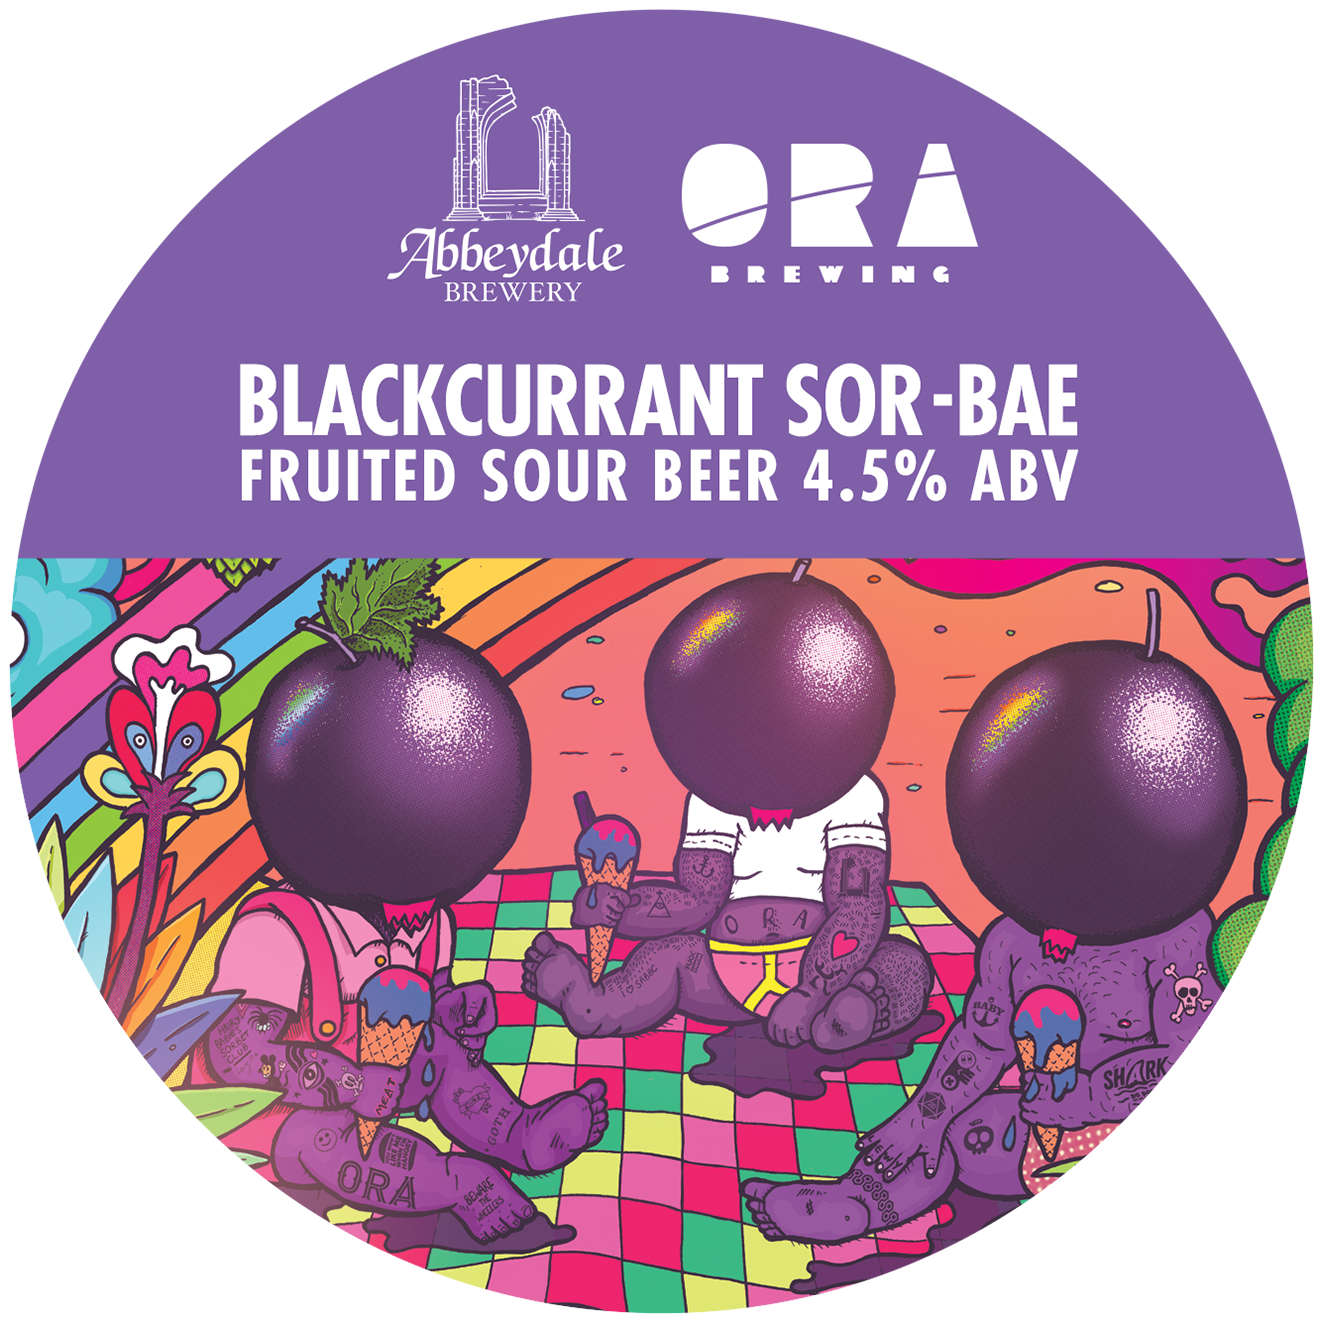 Craft Beer Label Illustration - Abbeydale Brewery - ORA Brewery - Blackcurrant Sor-bae Keg Artwork